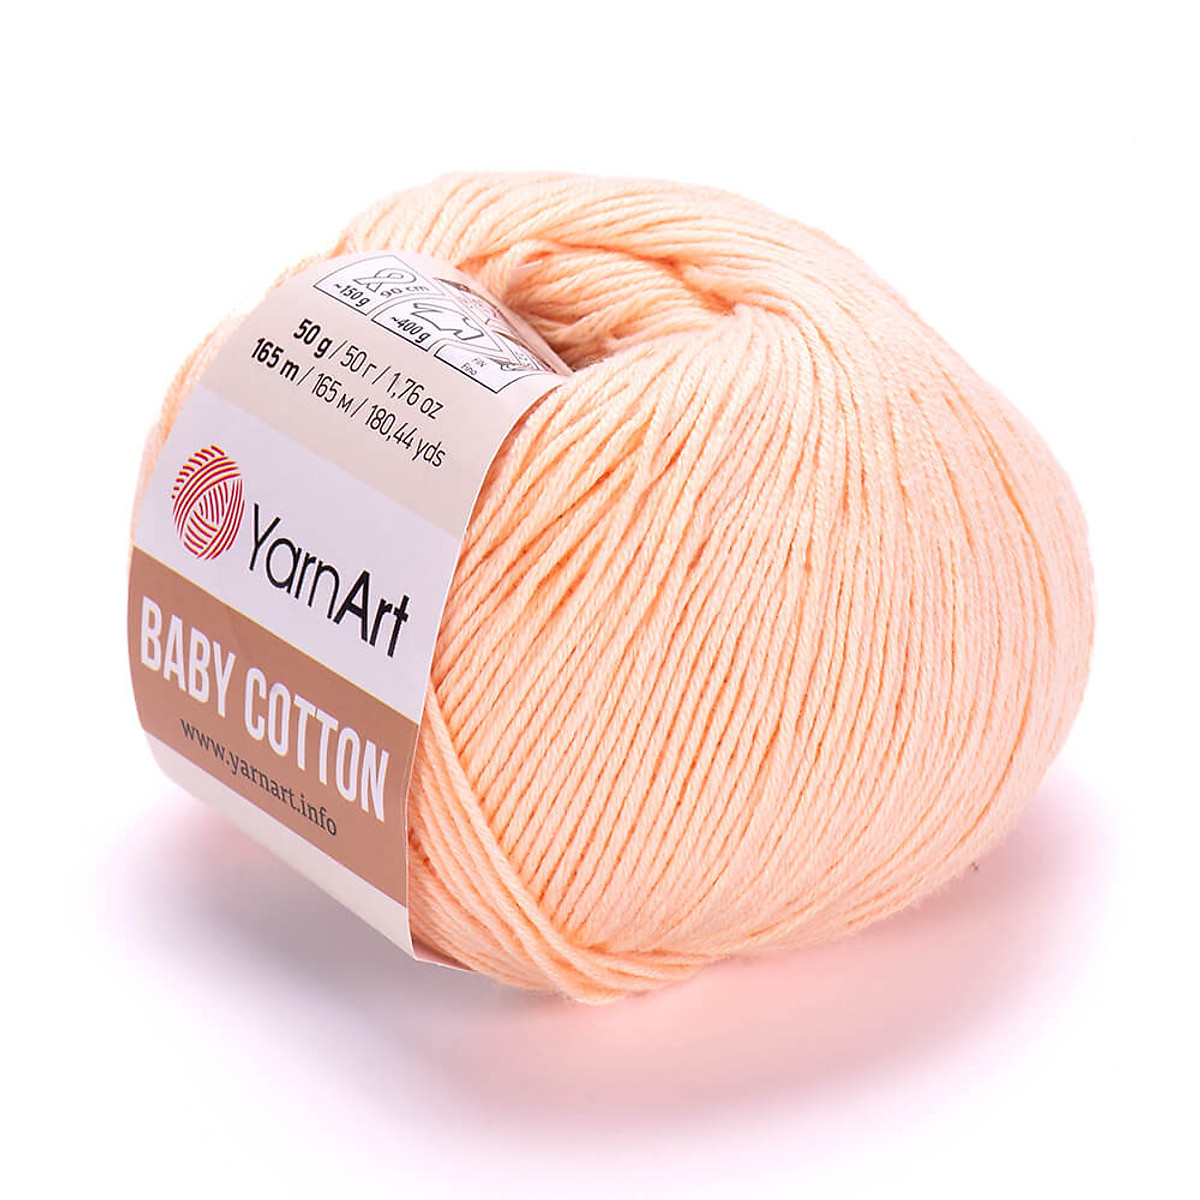 Cuộn len Baby Cotton trơn dành cho bé - Nhập khẩu từ hãng YarnArt - 50gram  dài 165m